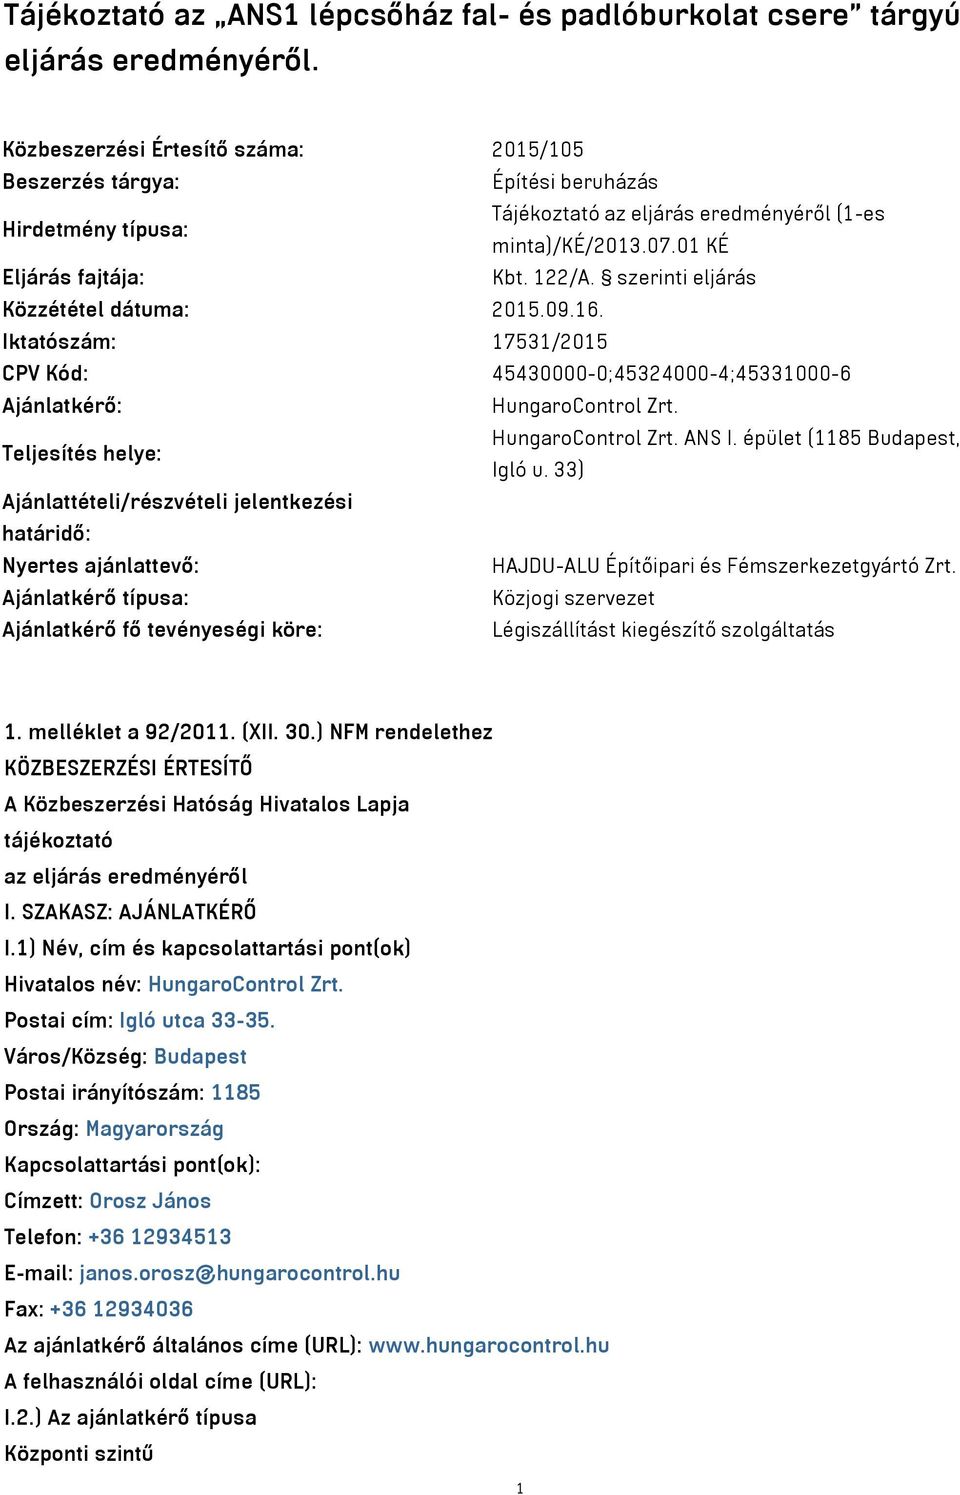 szerinti eljárás Közzététel dátuma: 2015.09.16. Iktatószám: 17531/2015 CPV Kód: 45430000-0;45324000-4;45331000-6 Ajánlatkérő: HungaroControl Zrt. Teljesítés helye: HungaroControl Zrt. ANS I.